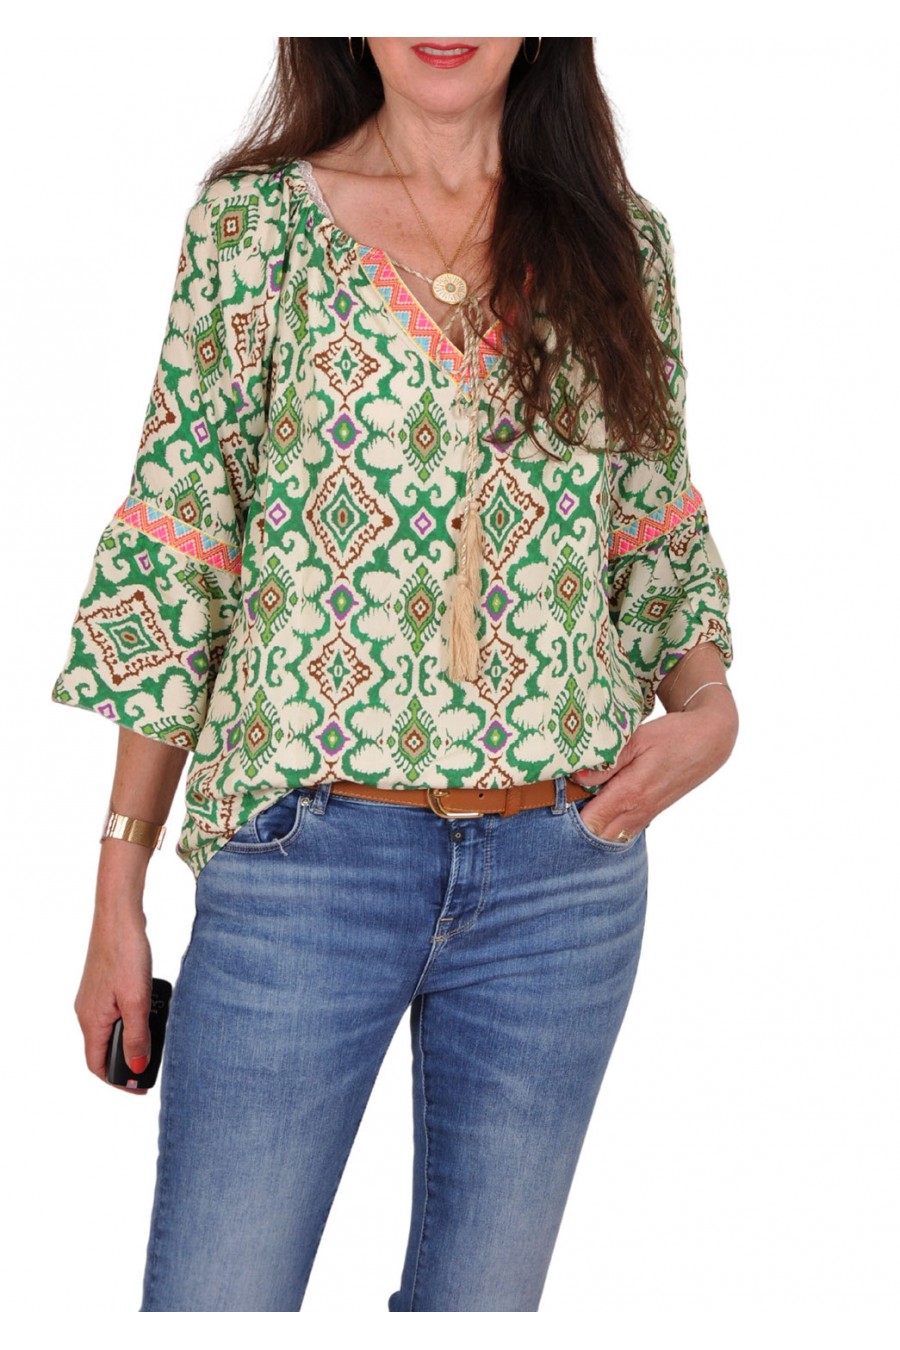 Bohemian blouse Viv groen-ecru Musthaves By Elja